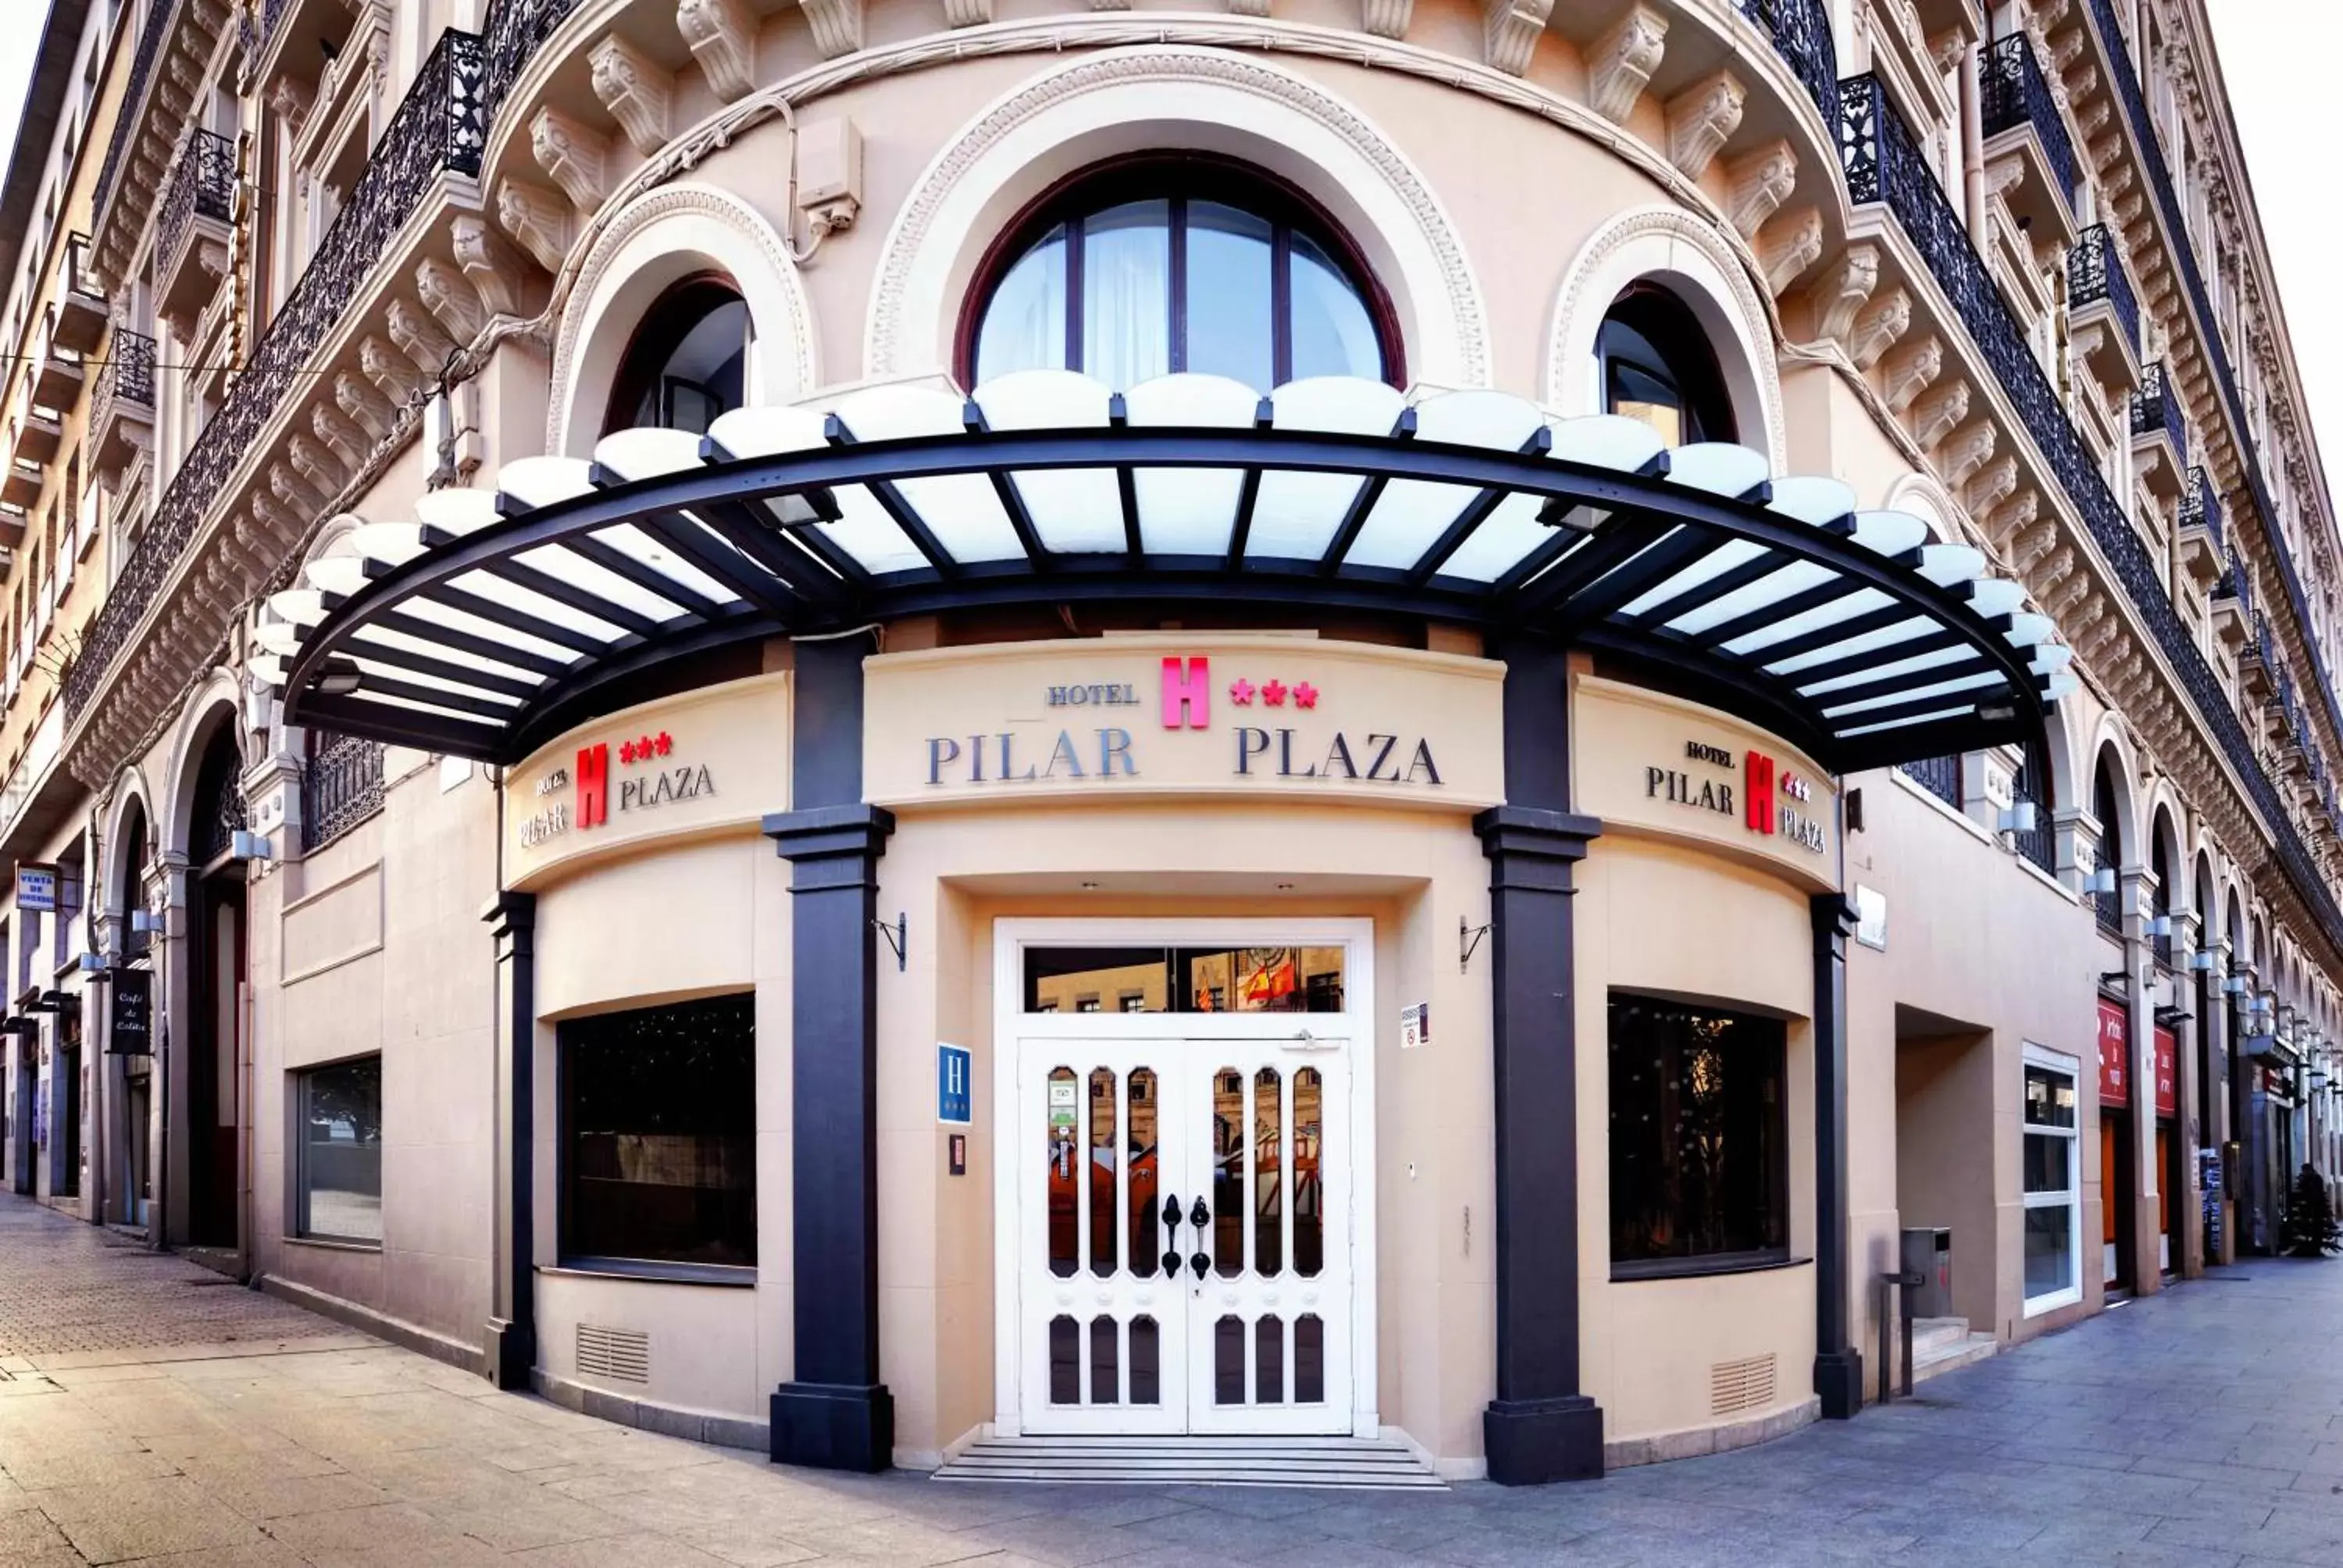 Facade/entrance in Hotel Pilar Plaza